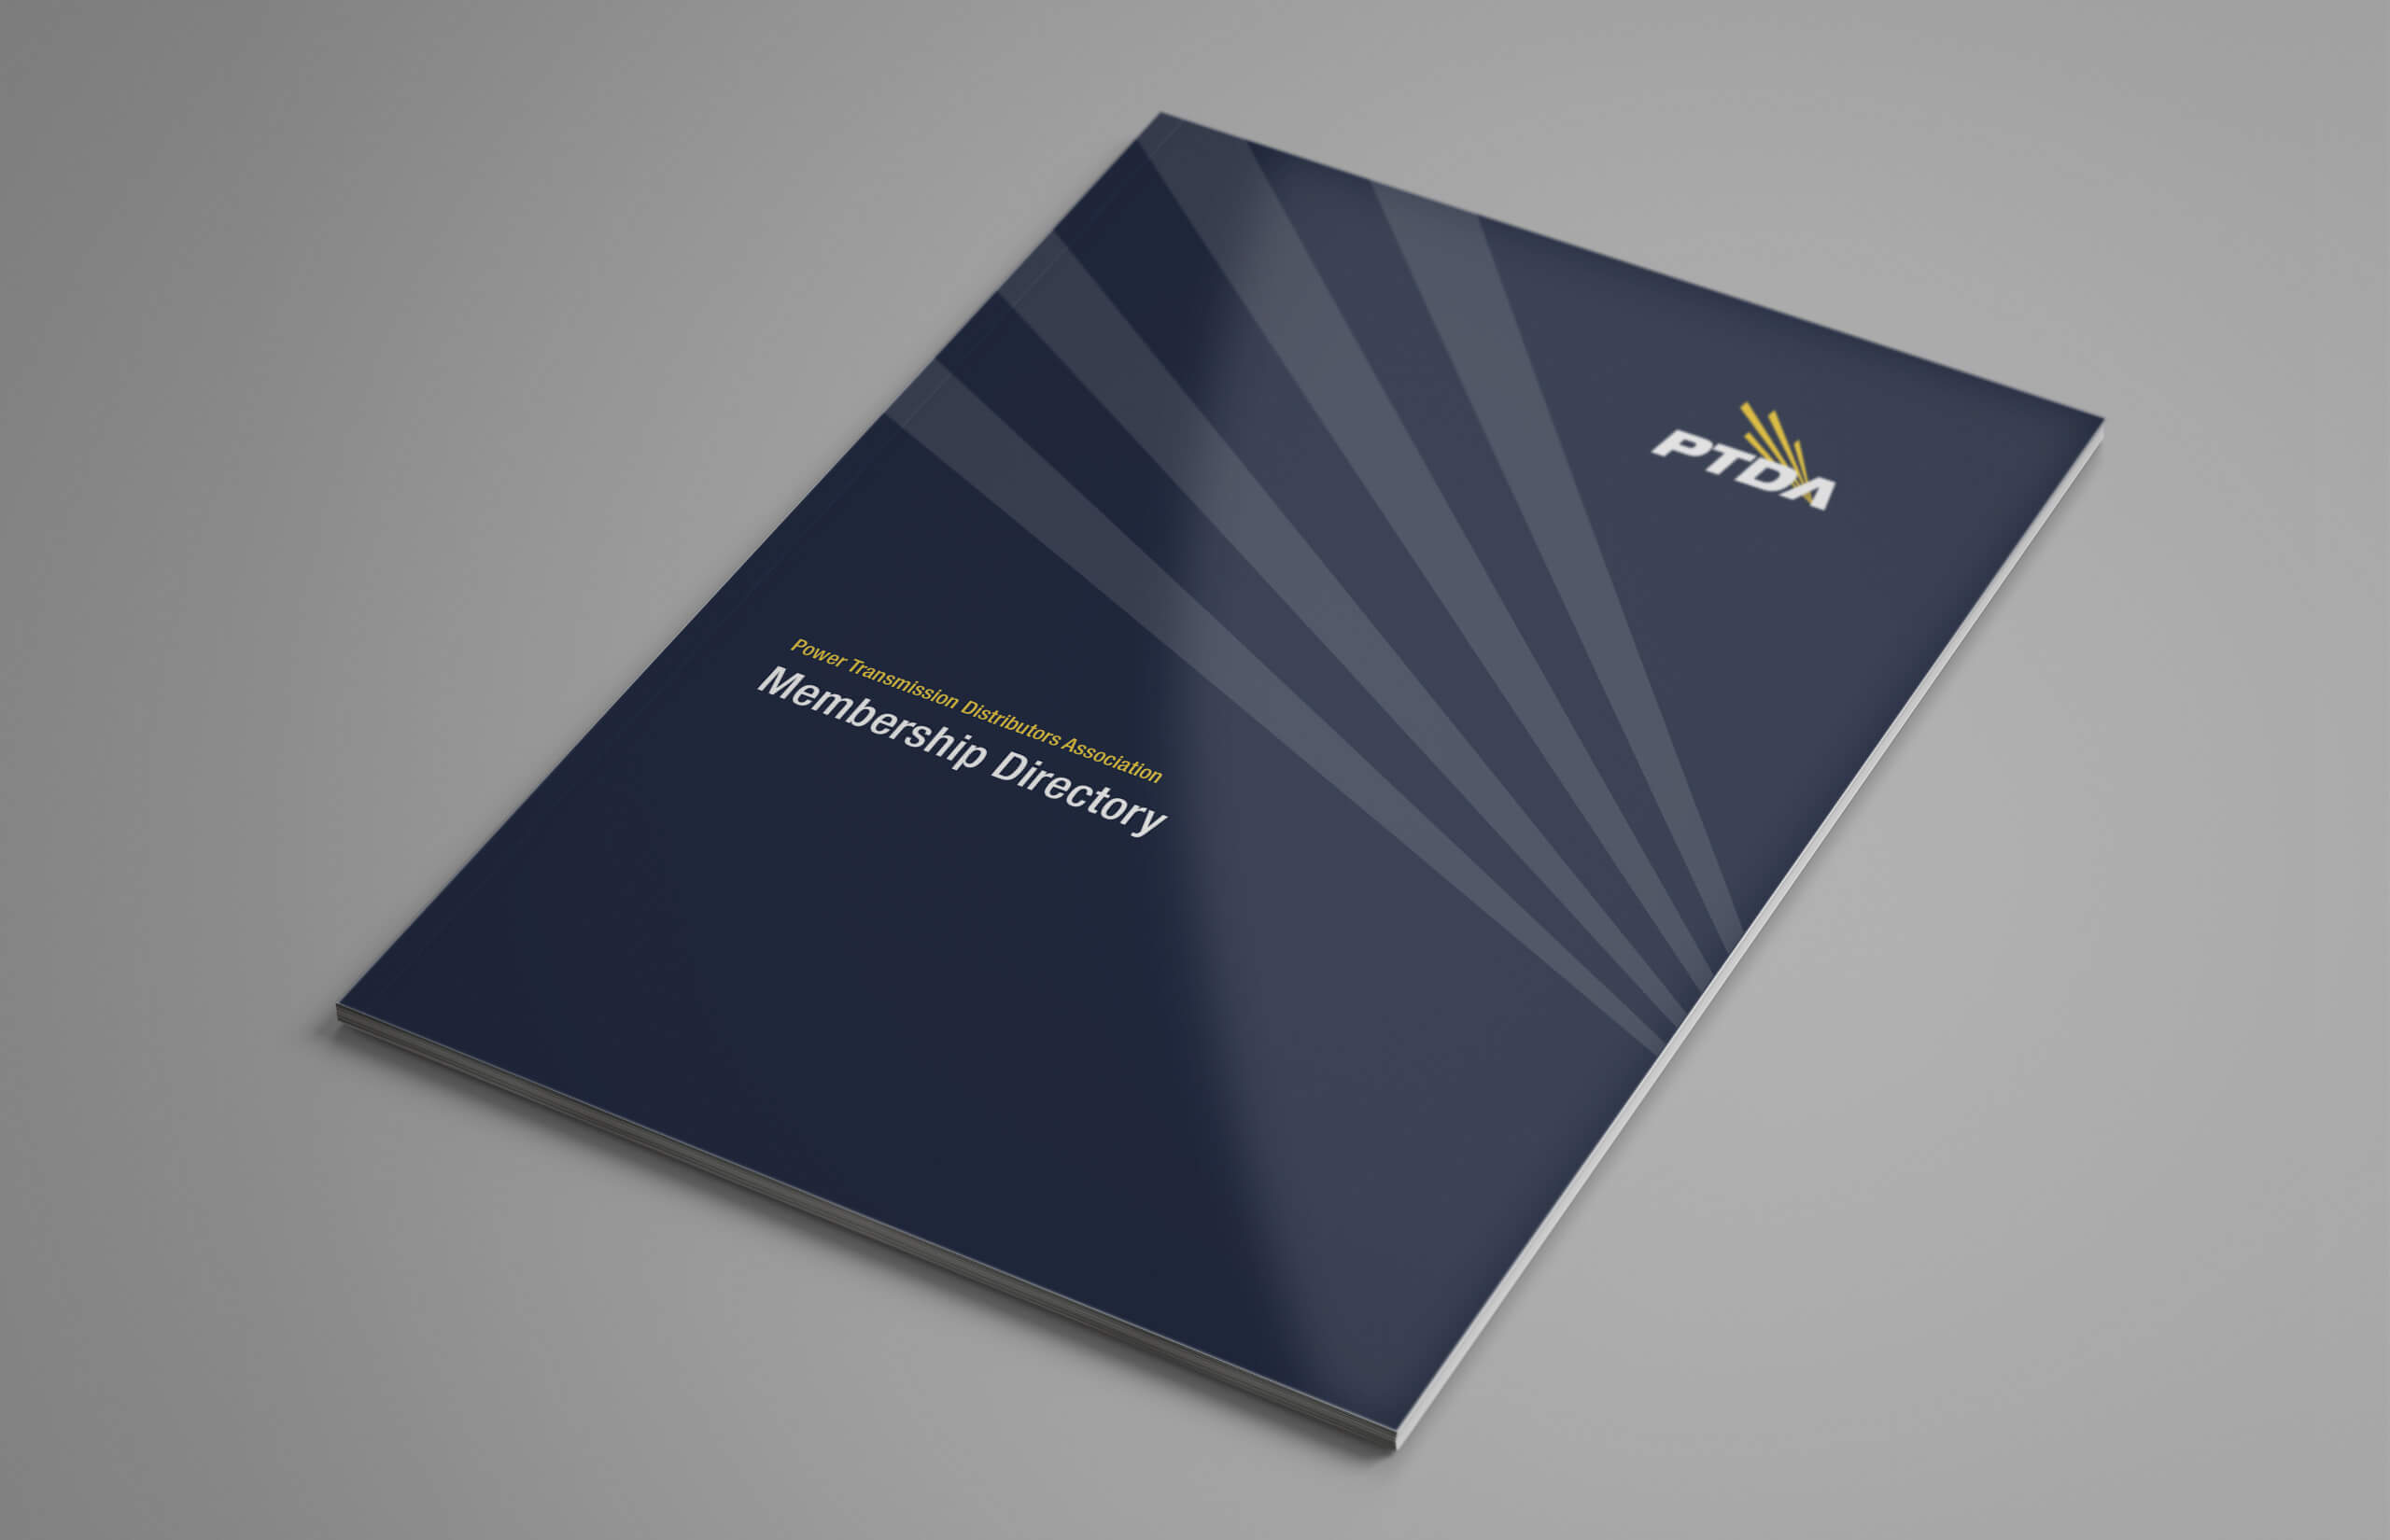 PTDA Membership Directory Cover